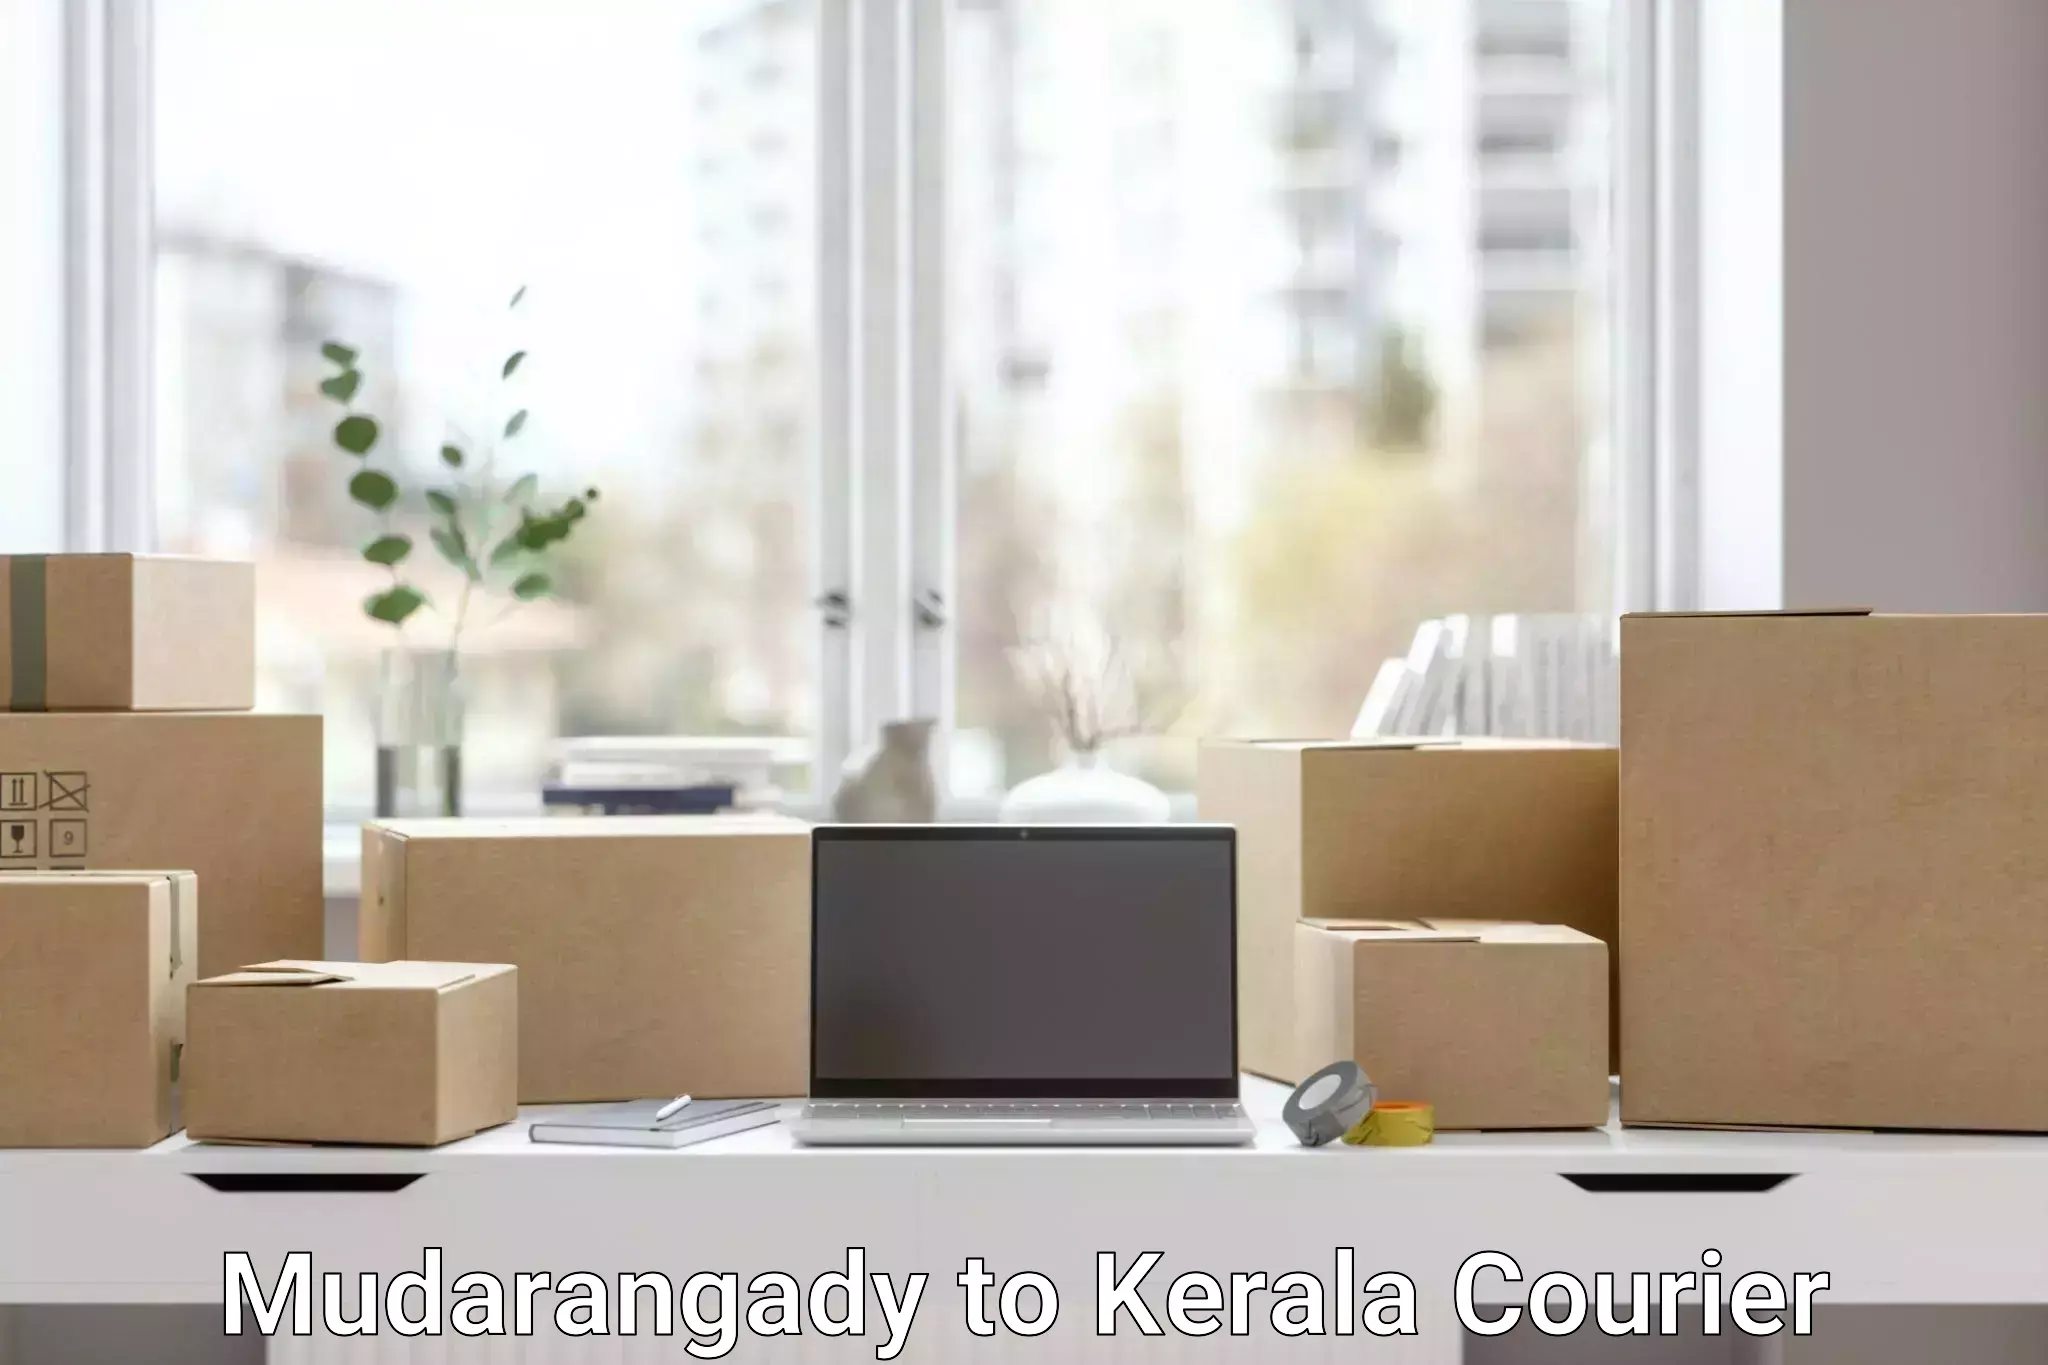 Customizable shipping options Mudarangady to Kerala